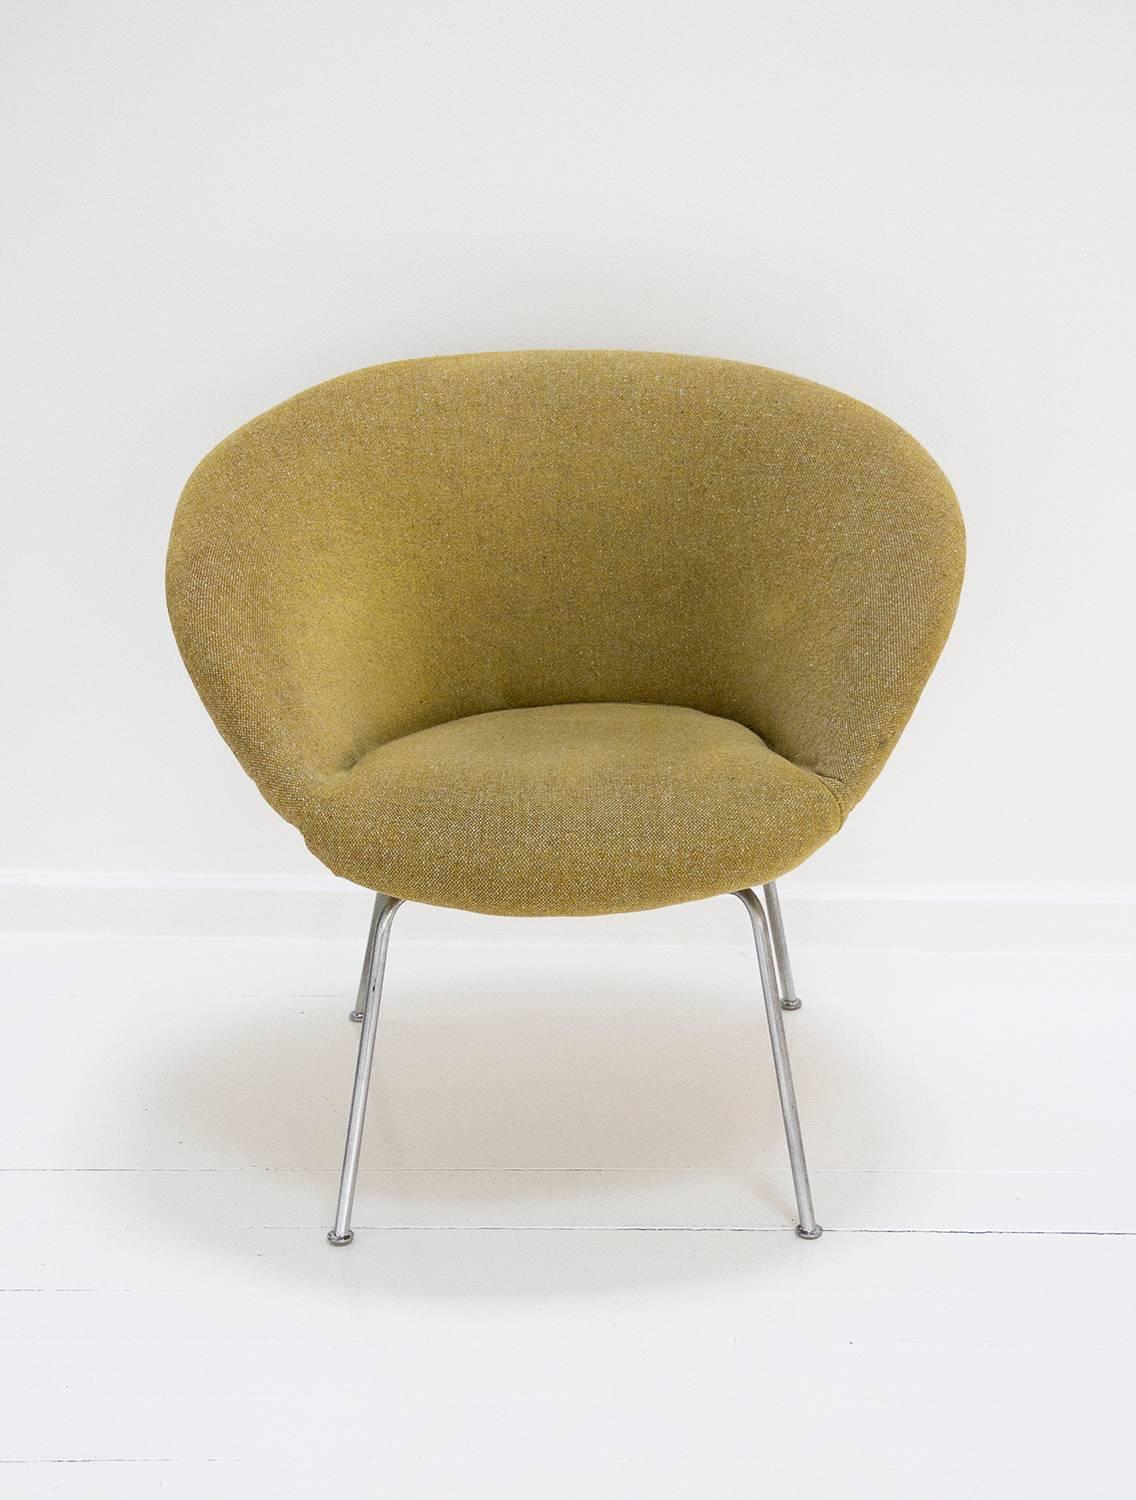 Danish Pot Chair Designed by Arne Jacobsen for Fritz Hansen, circa 1950, Denmark